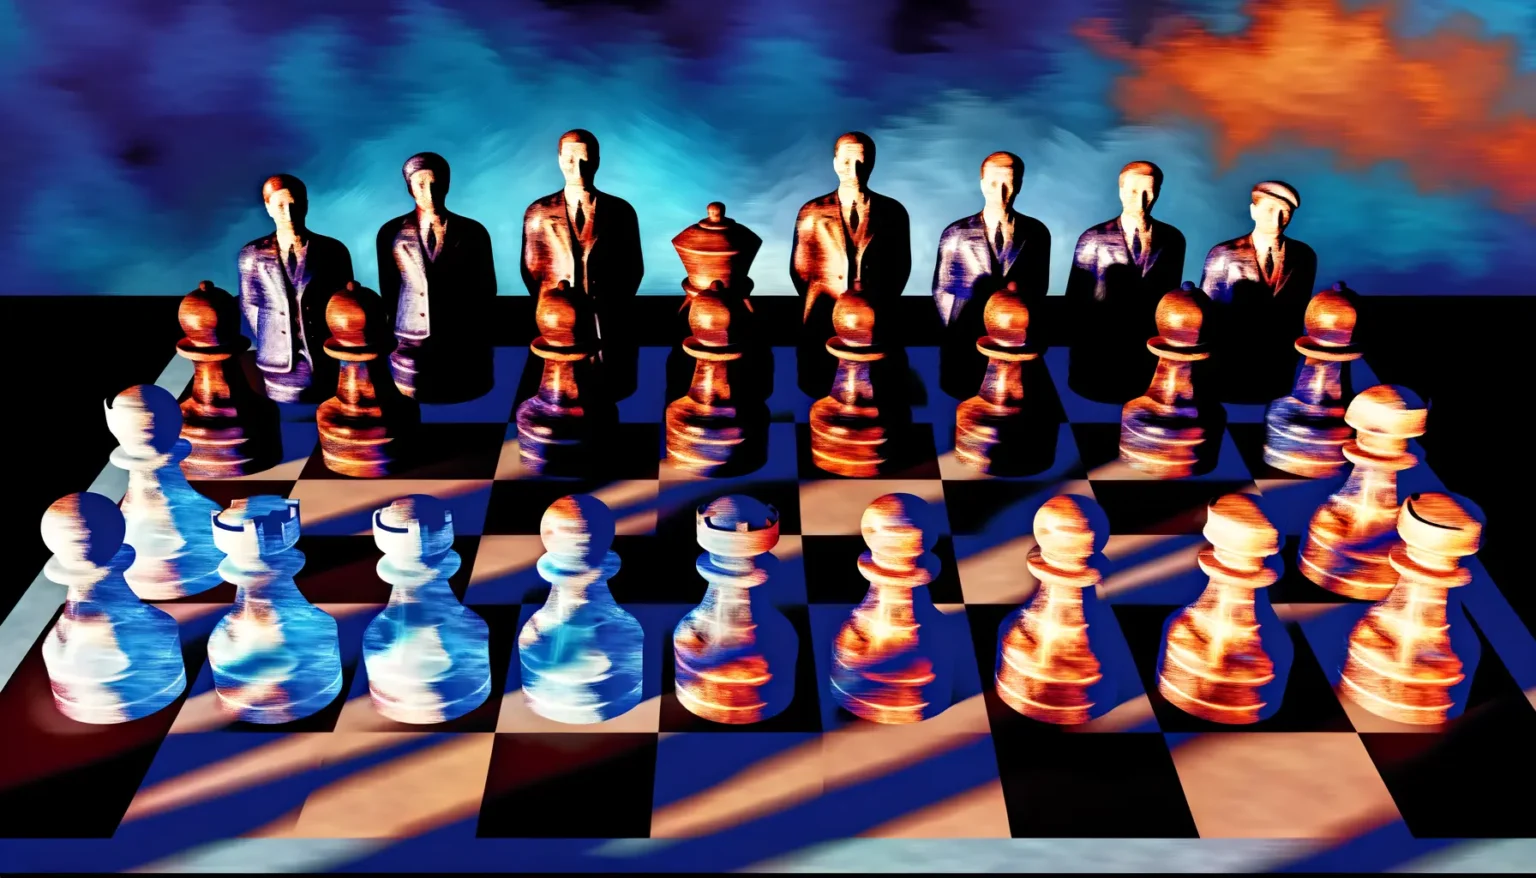 Digitales Kunstwerk mit Schachfiguren, die Gesichter von Menschen in Anzügen haben, auf einem Schachbrett vor einem abstrakten Hintergrund in Blau- und Orangetönen.